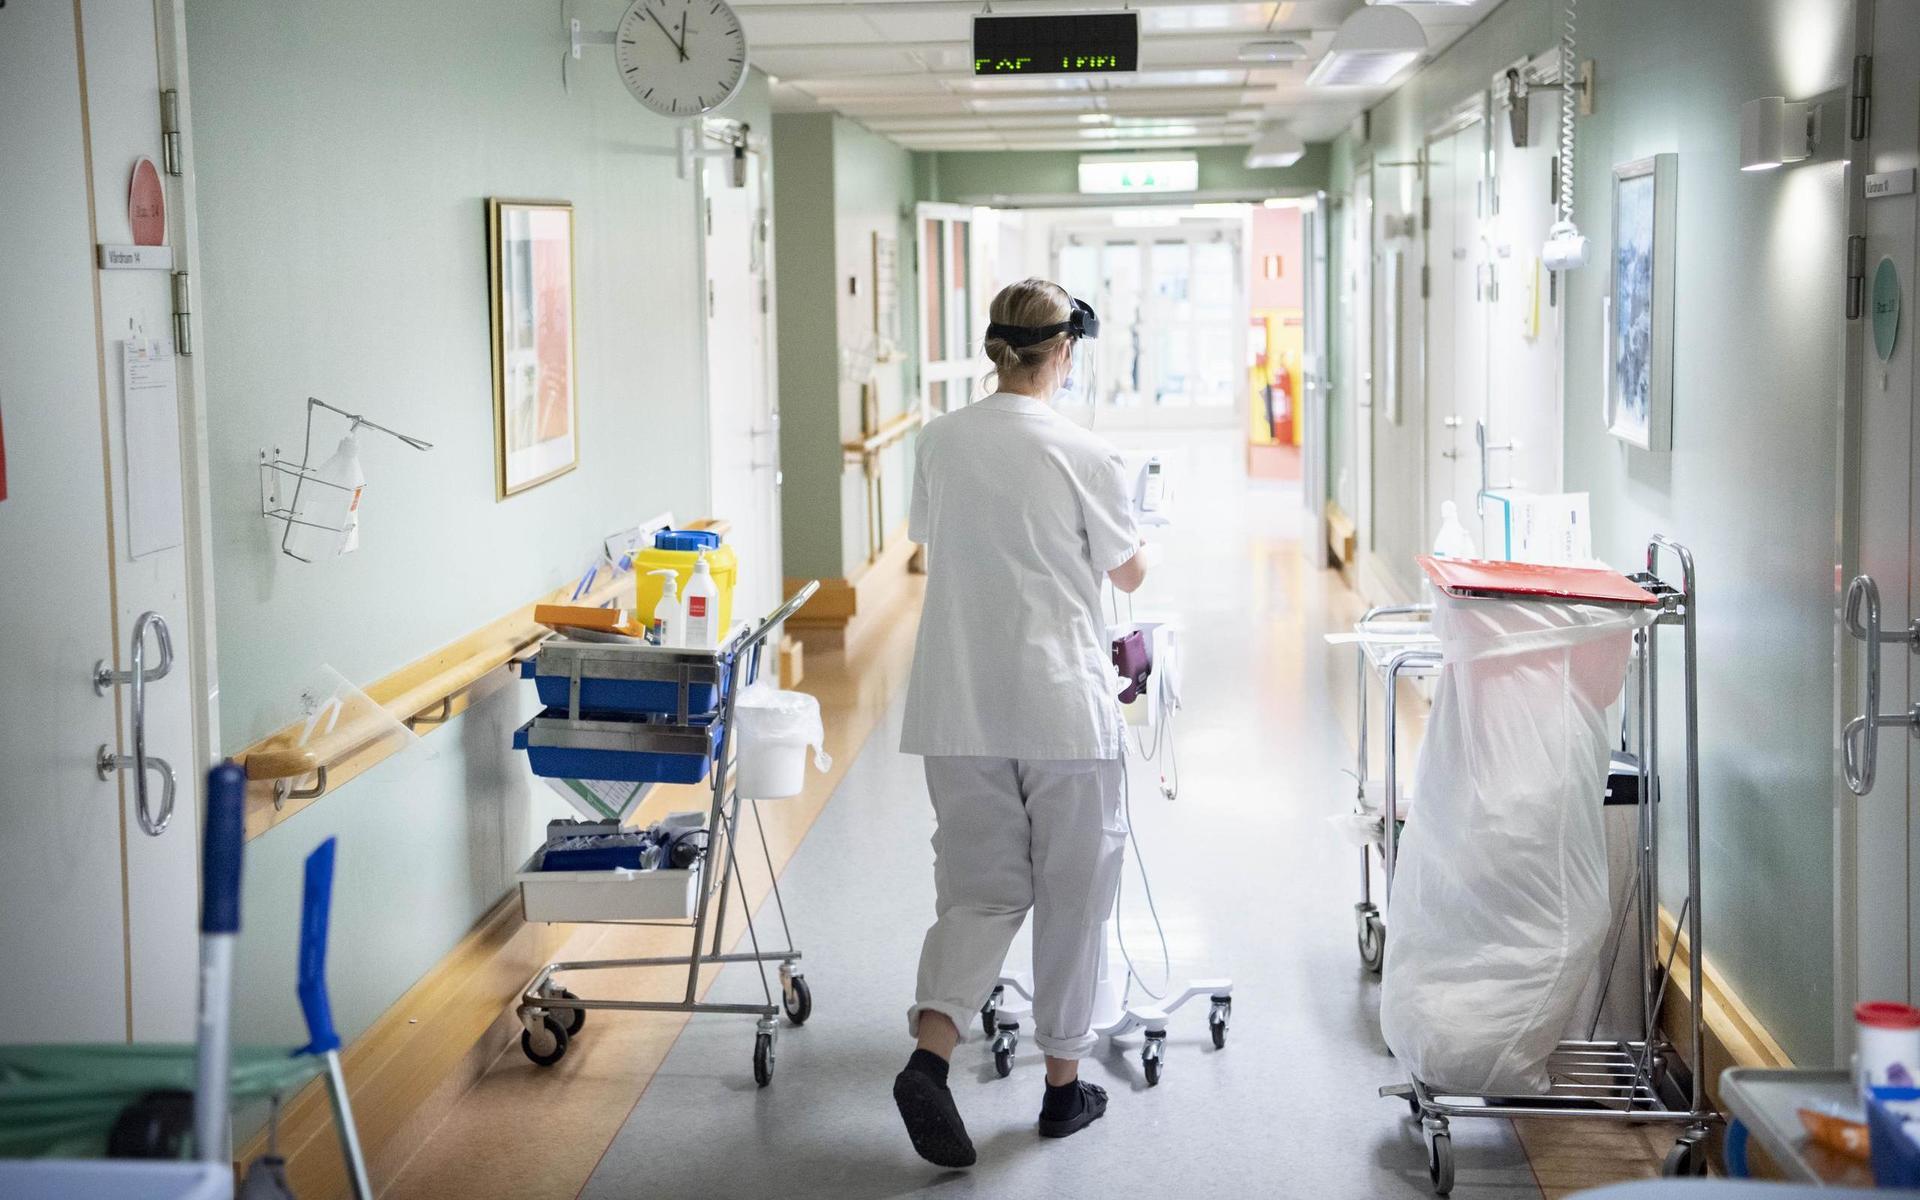 Majoriteten av covidpatienterna i Halland vårdas på det som kallas epidemiavdelning. Behöver patienten mer övervakning och intensivare vård flyttas den till IVA.